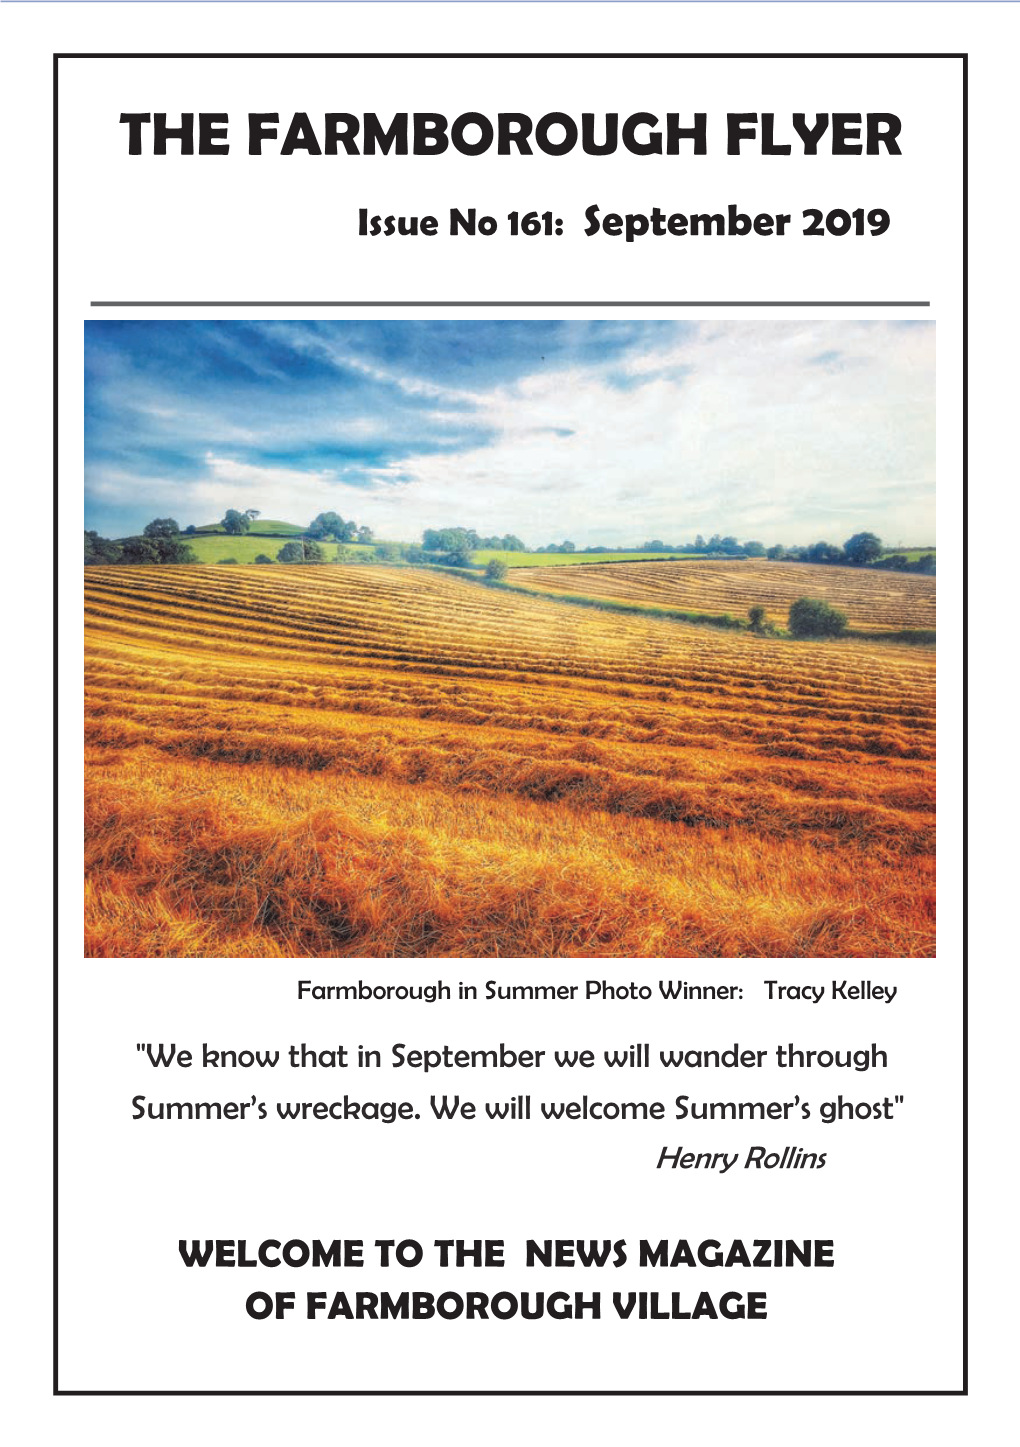 THE FARMBOROUGH FLYER Issue No 161: September 2019